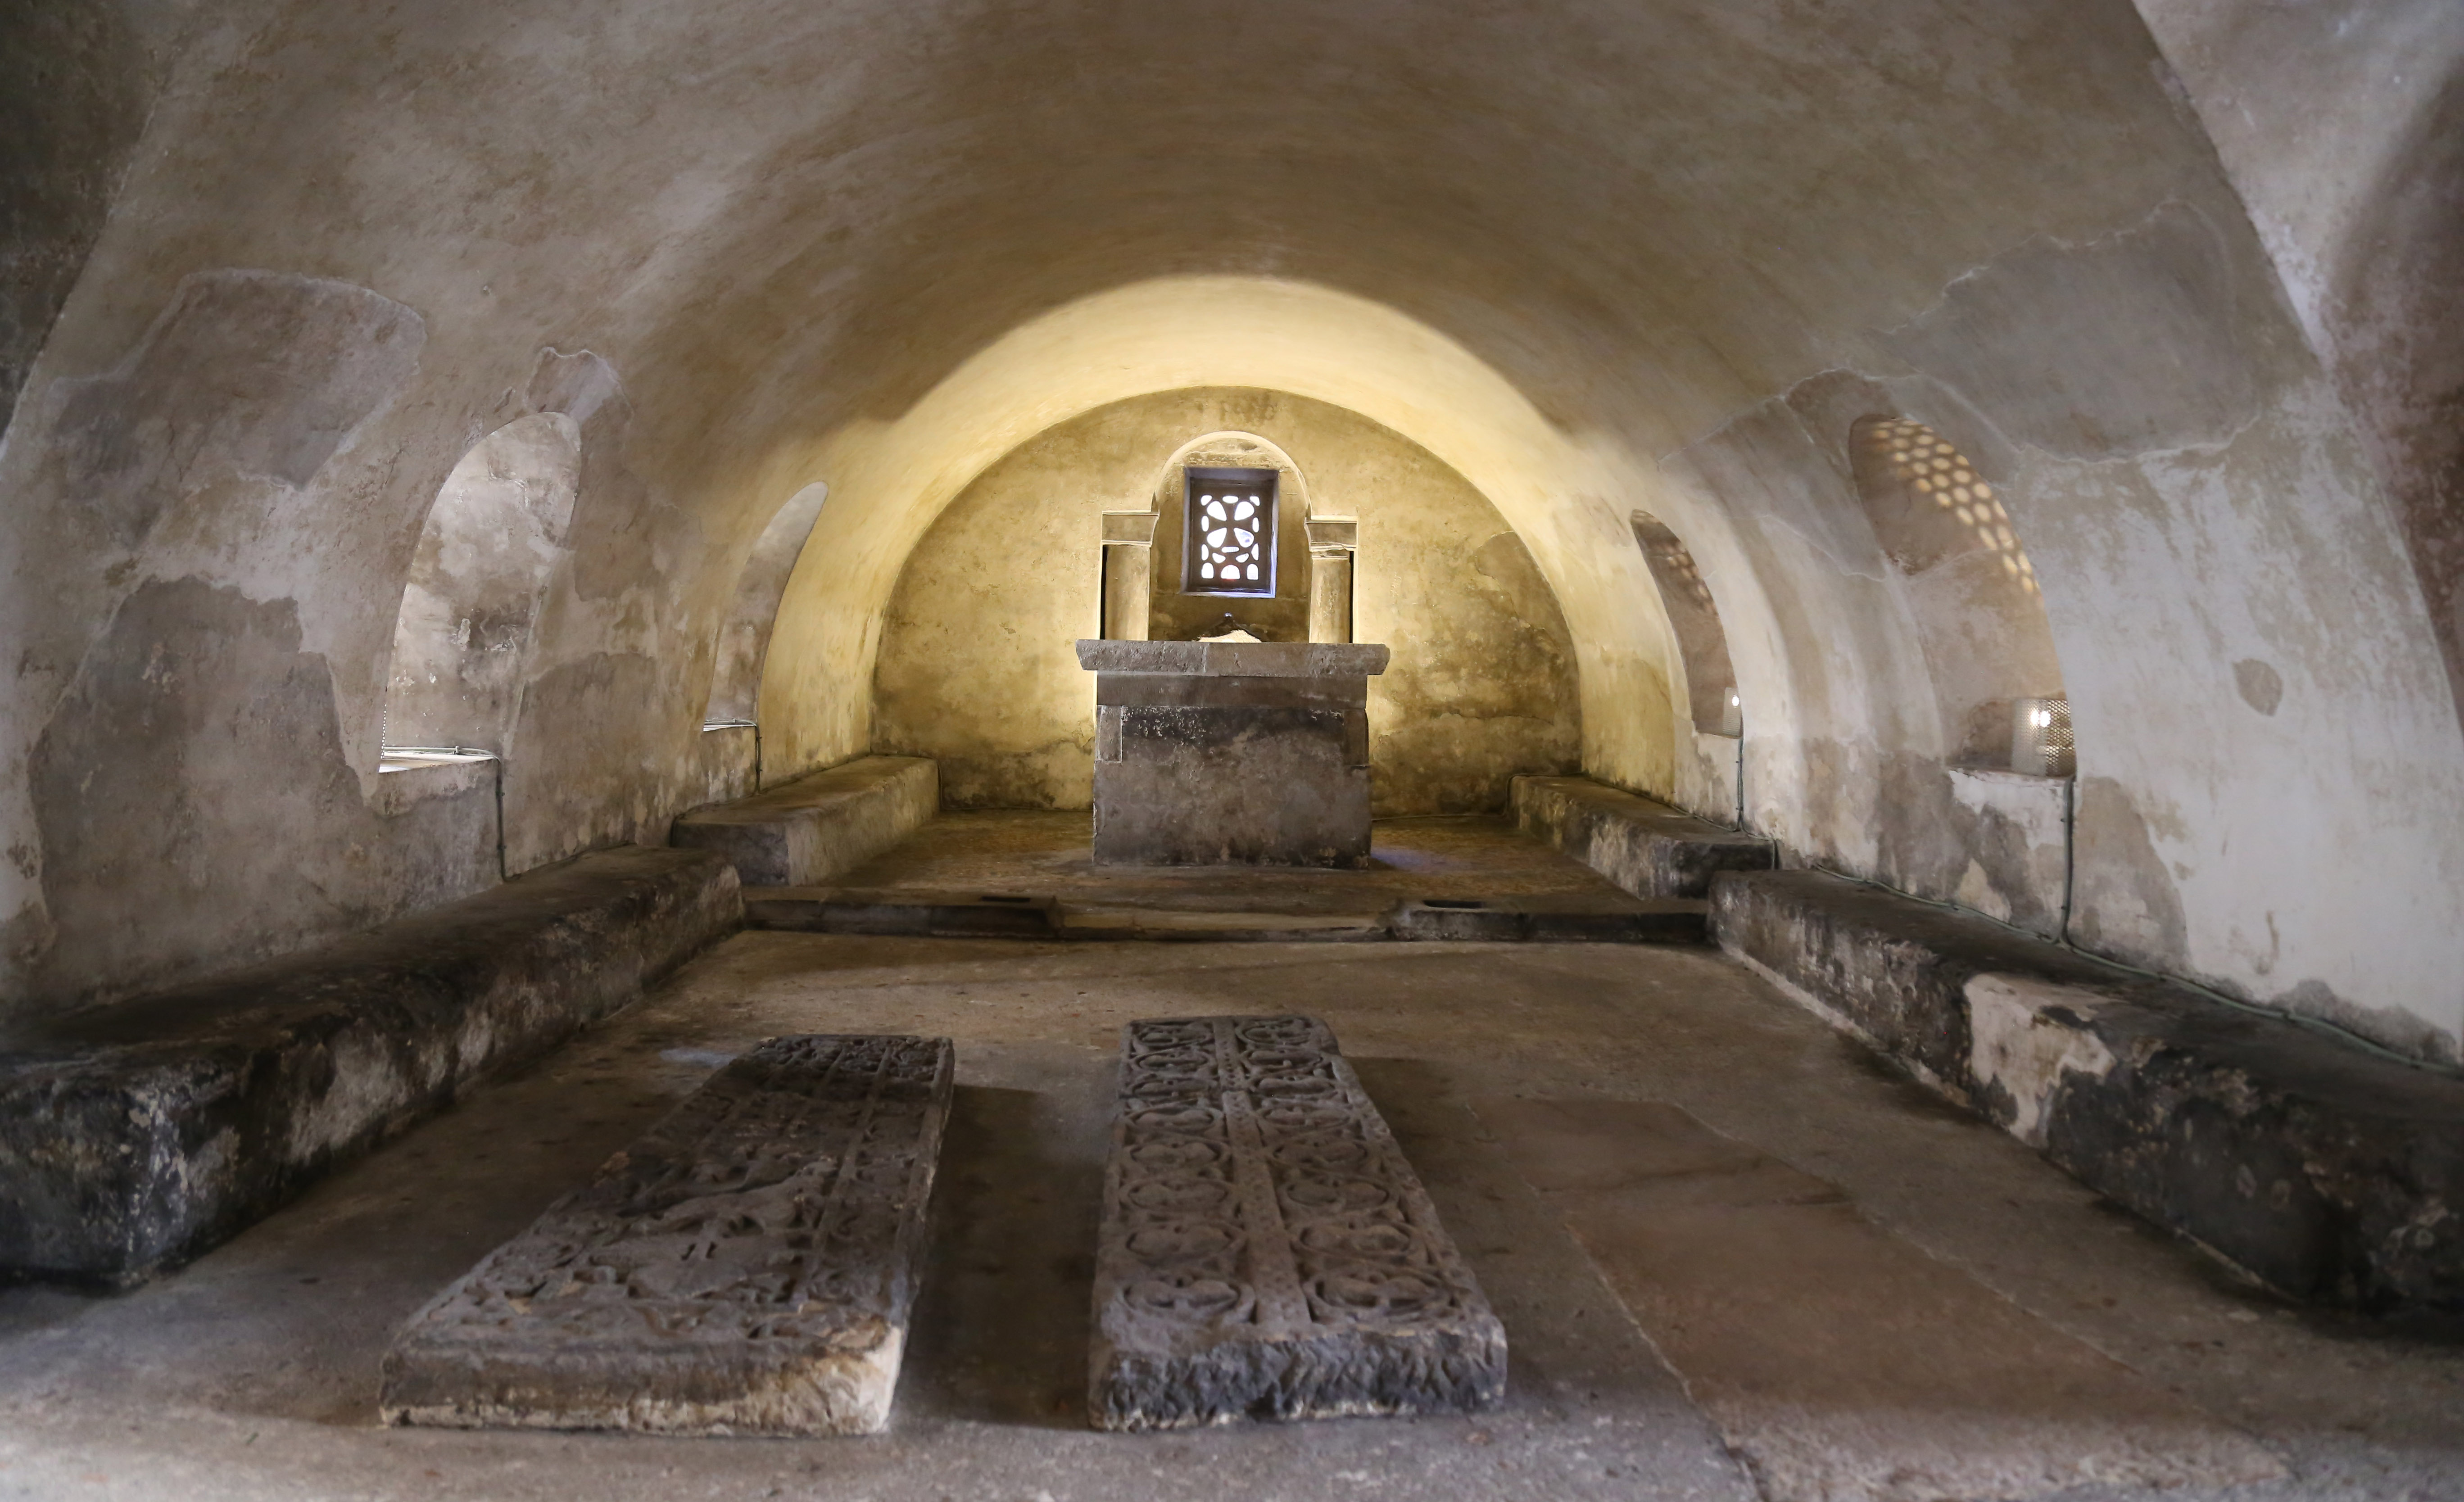 Foto de la cripta medieval de Santa Leocadia Cripta se observa desde un extremo su planta rectangular, la nave se compone de una bóveda de cañón, y al fondo un presbiterio, donde se sitúa el altar.